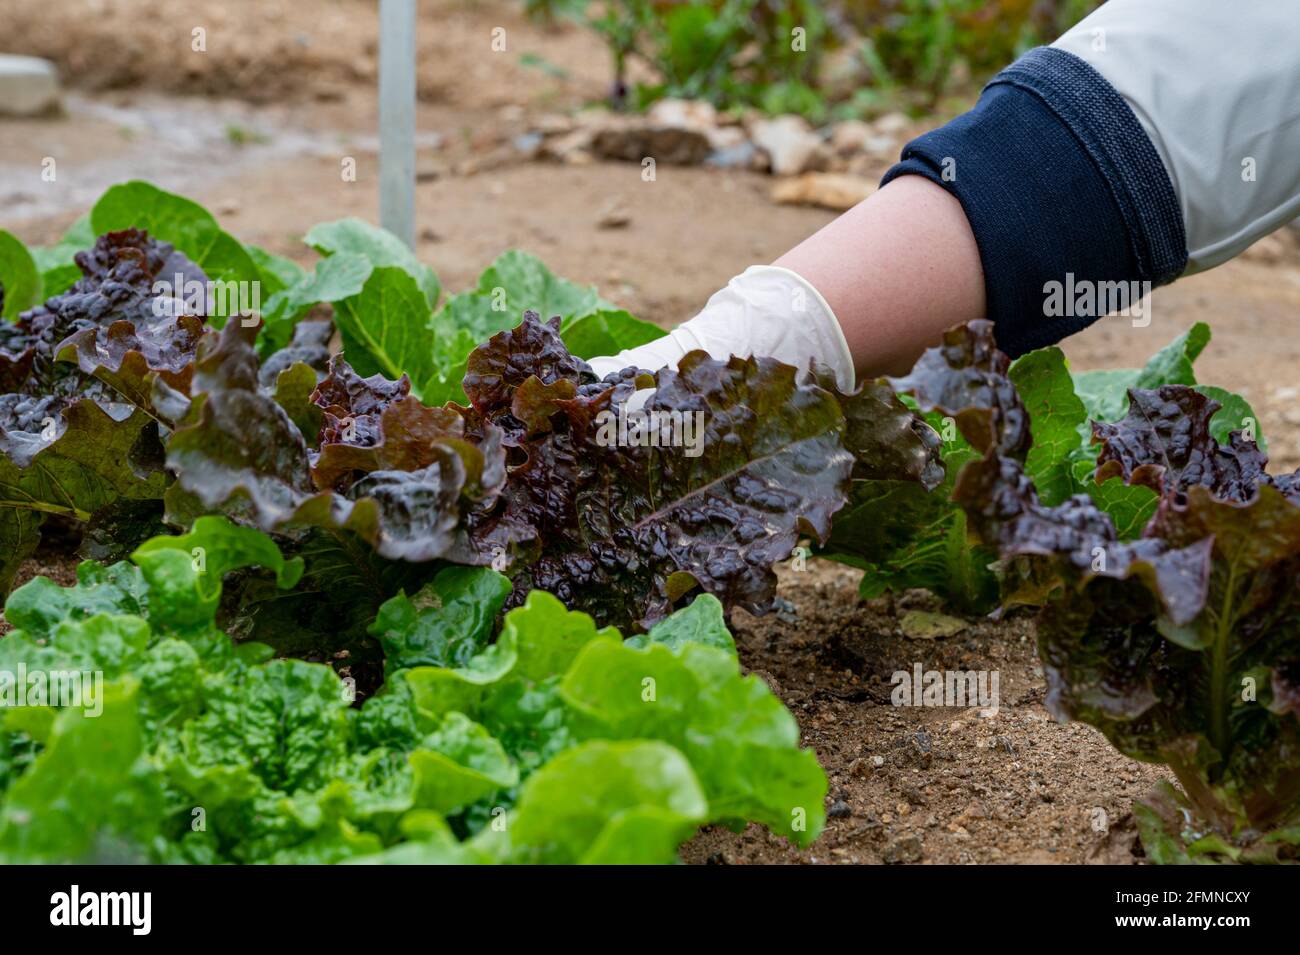 Die Hand des Menschen pflückt Blätter von frischem Gemüse, das im Boden wächst. Stockfoto